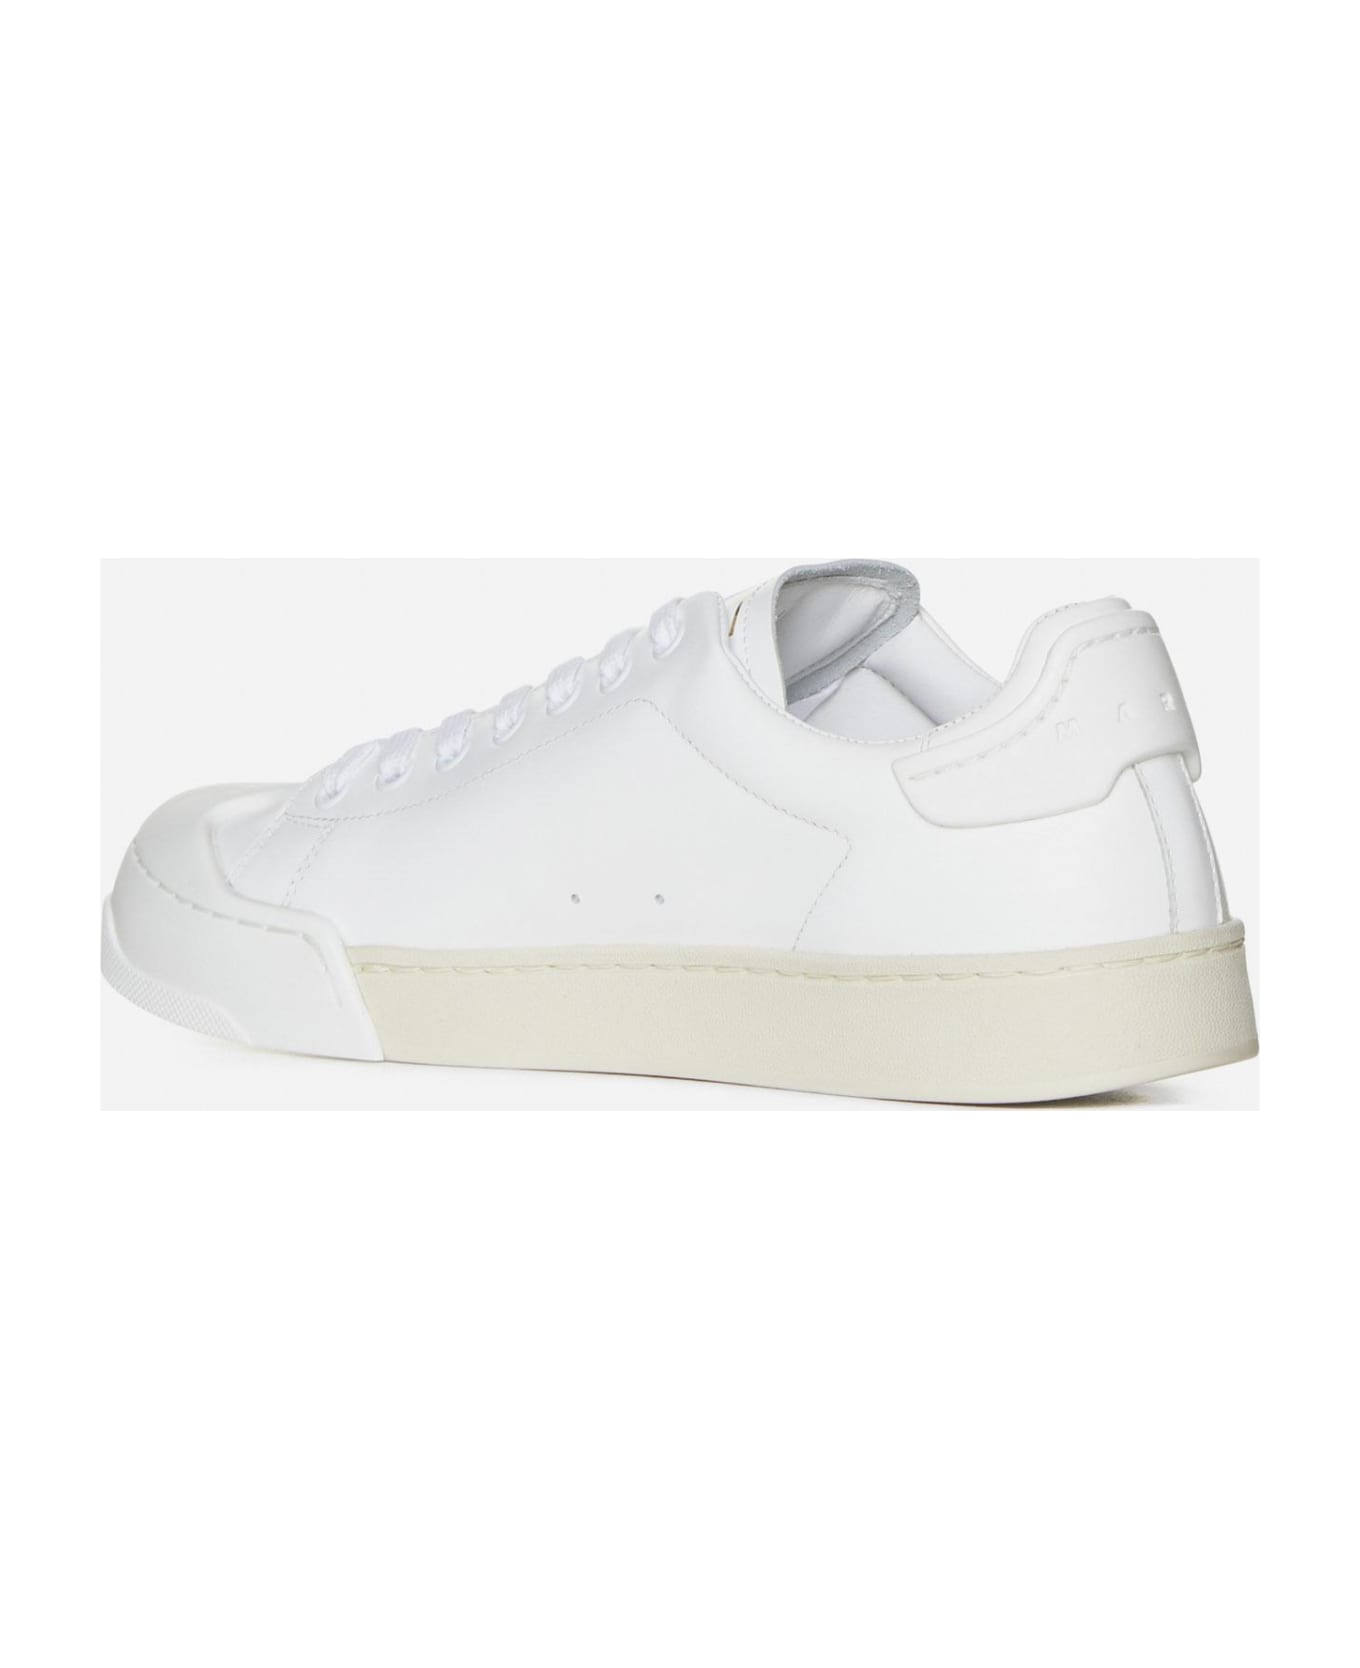 Marni Dada Bumper Leather Sneakers - Bianco